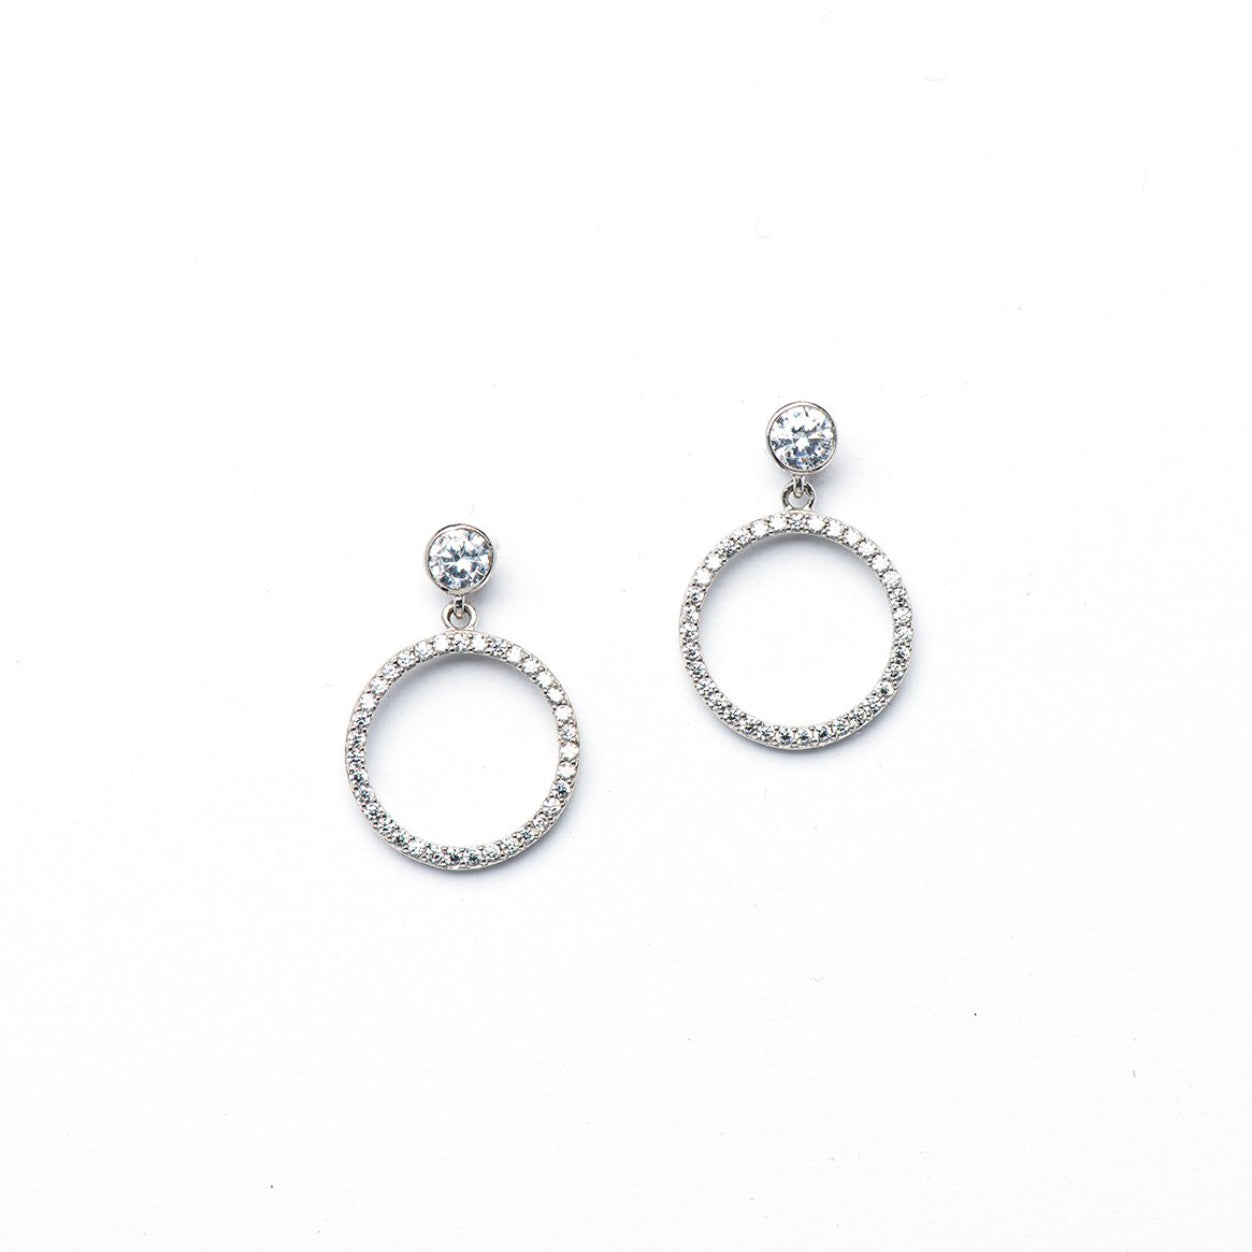 DK-925-095 Circle of life drop earrings